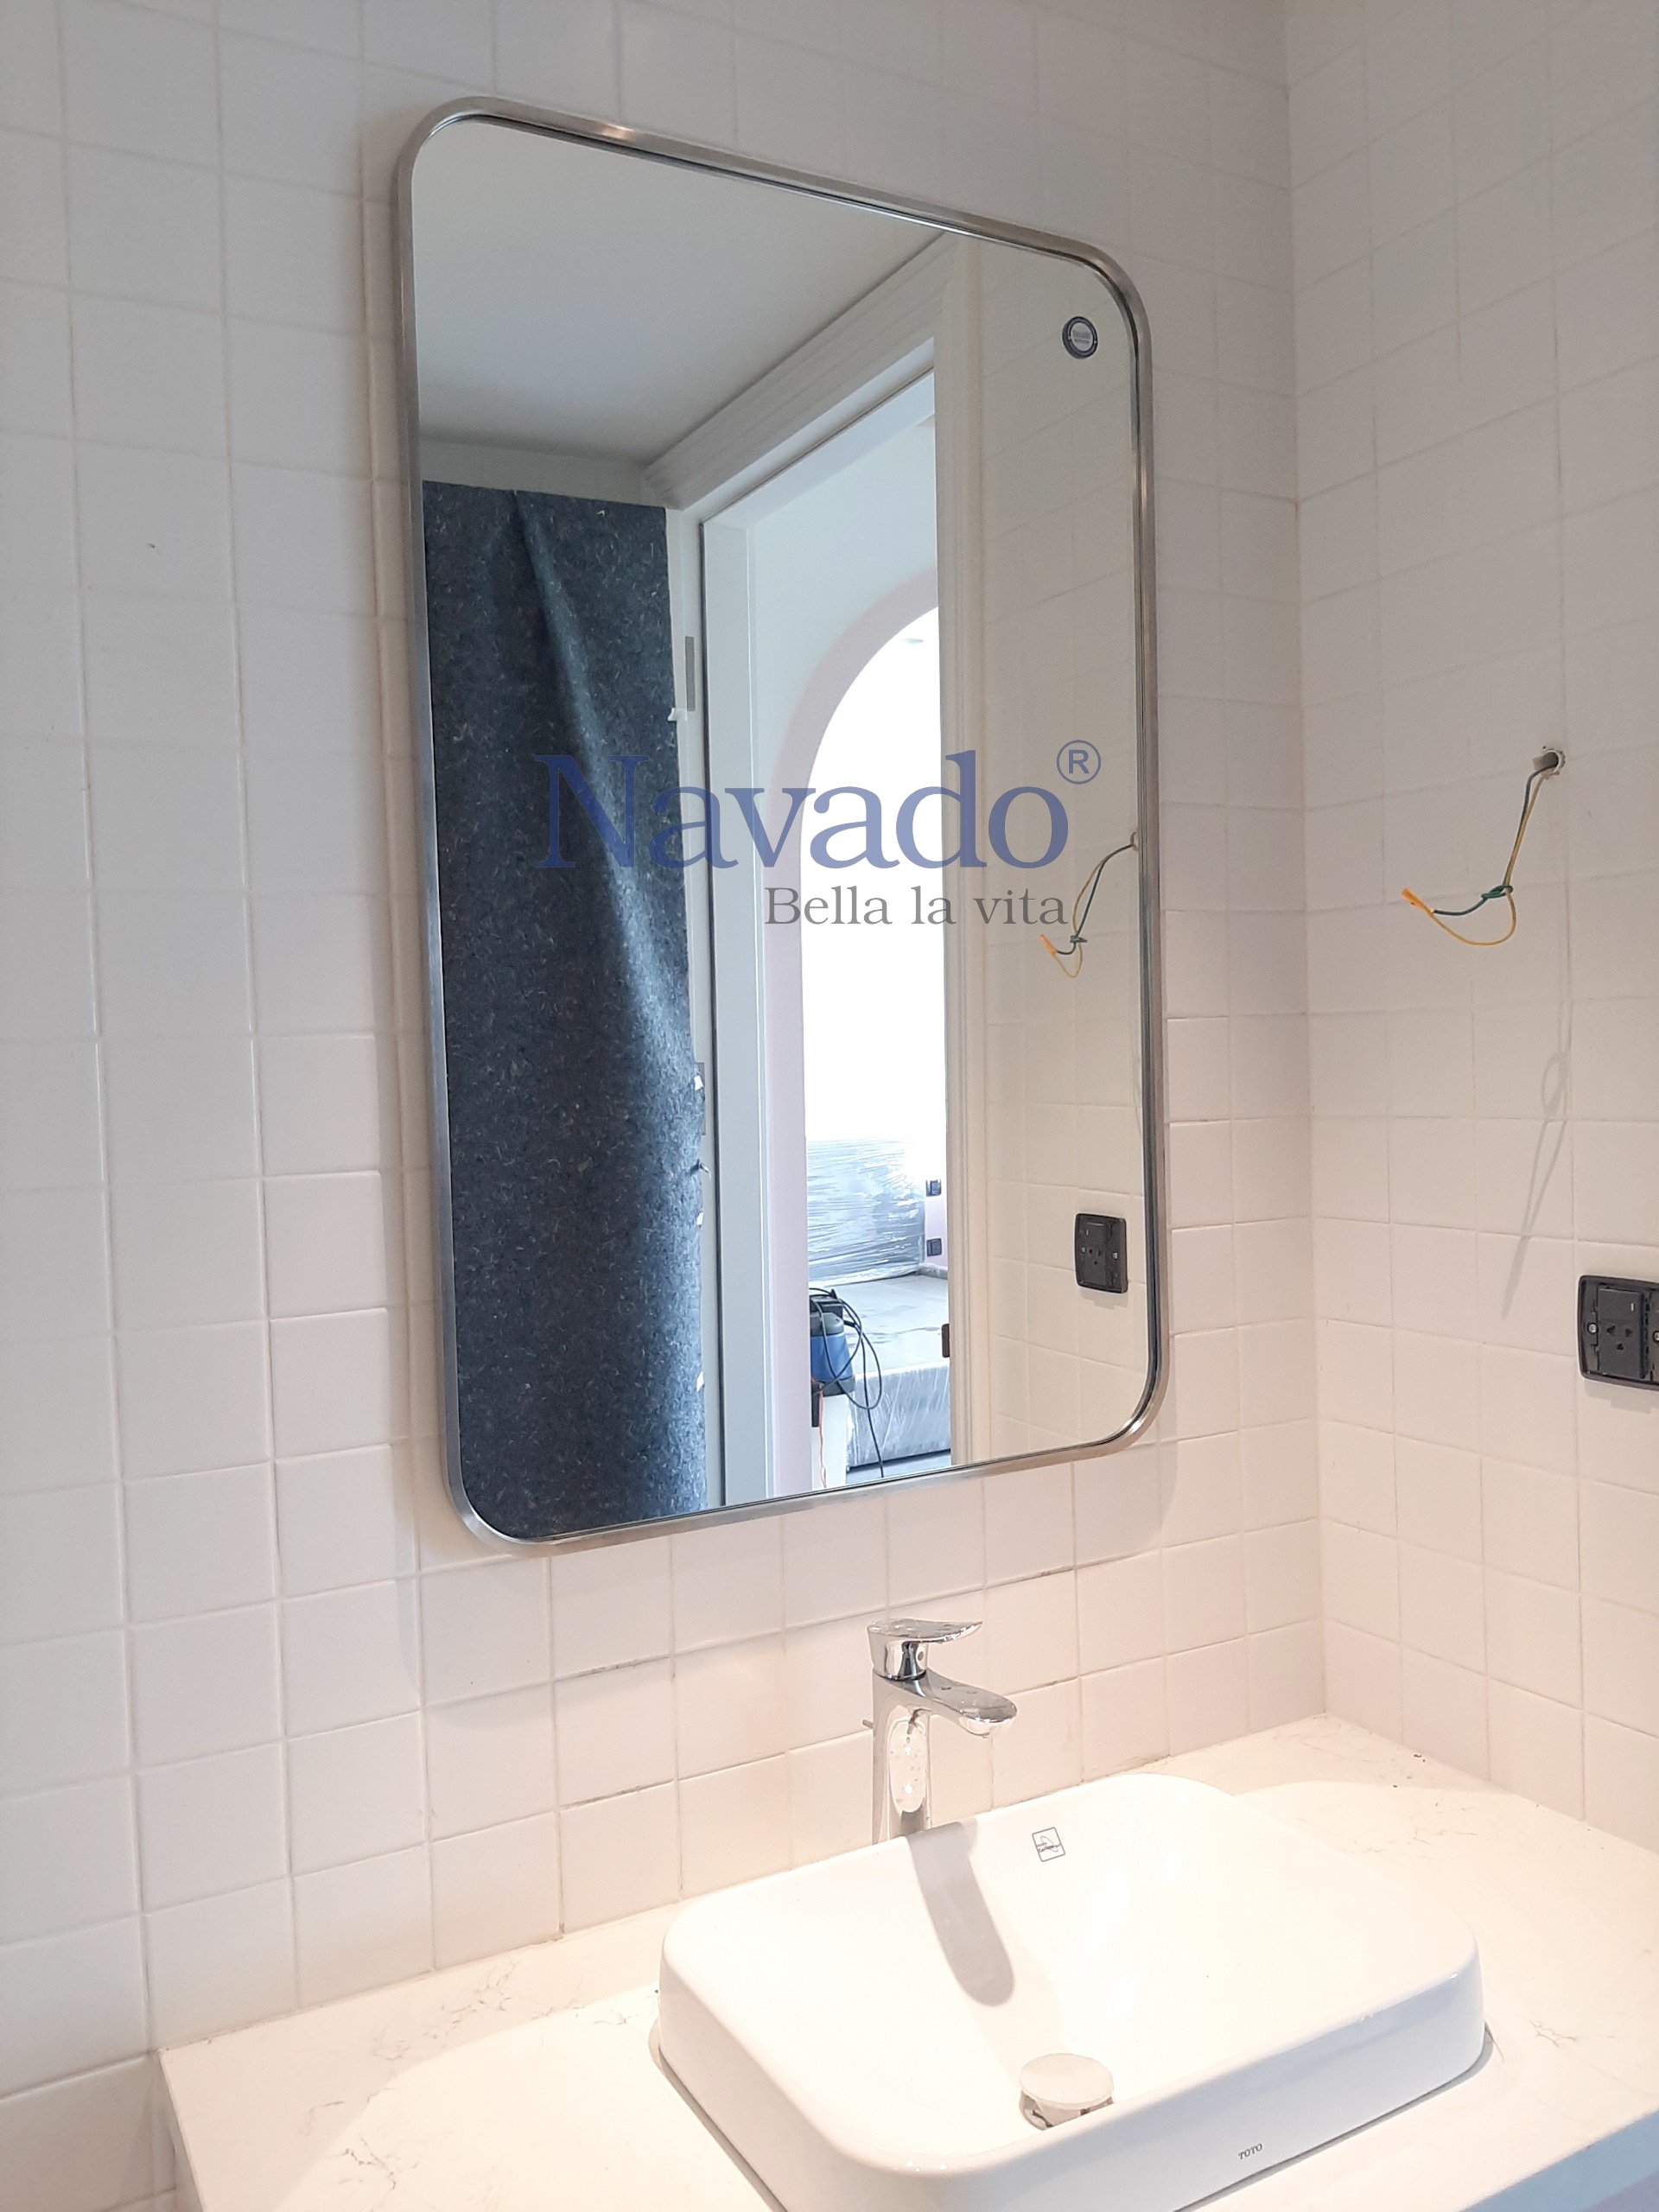 Gương inox mạ bạc phòng tắm: Sử dụng chiếc gương inox mạ bạc trong phòng tắm của mình, bạn sẽ được trải nghiệm không gian phòng tắm hiện đại và tiện nghi. Với sự kết hợp giữa inox và bạc cùng với sự chống ăn mòn, chiếc gương inox của bạn sẽ tạo điểm nhấn cho không gian phòng tắm của bạn.